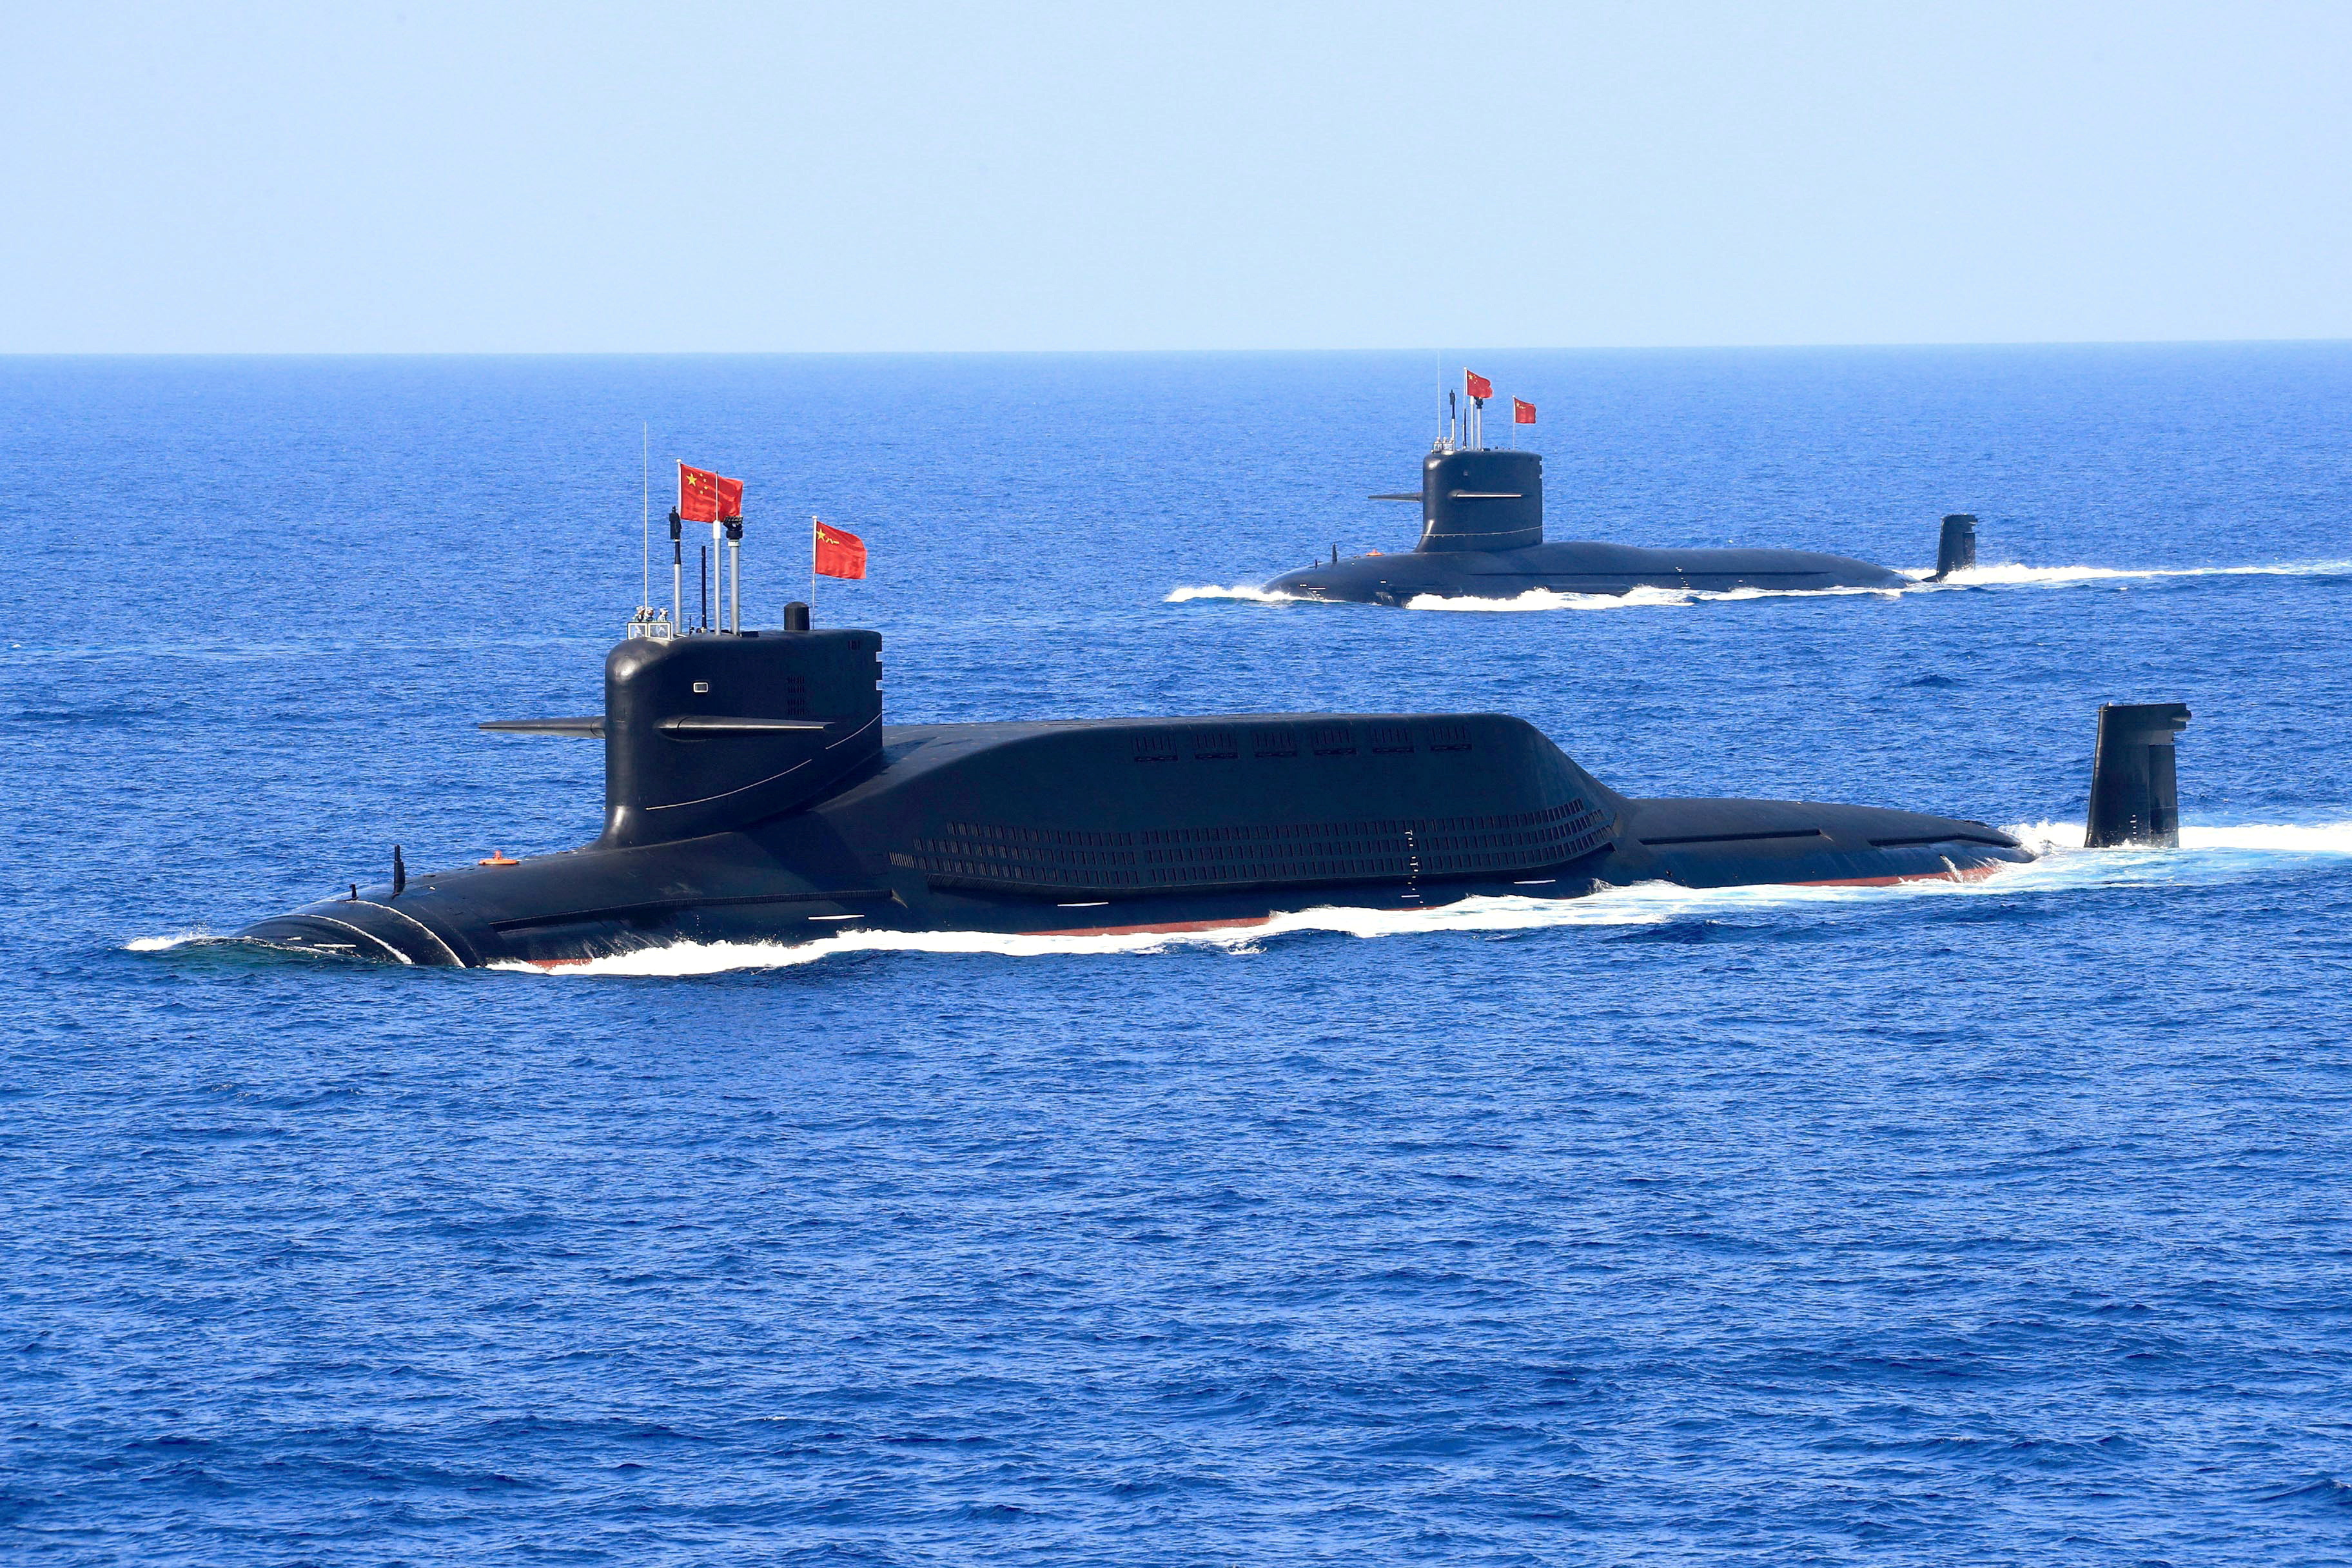 Submarinos de propulsión nuclear del régimen chino en el Mar del Sur (Reuters)